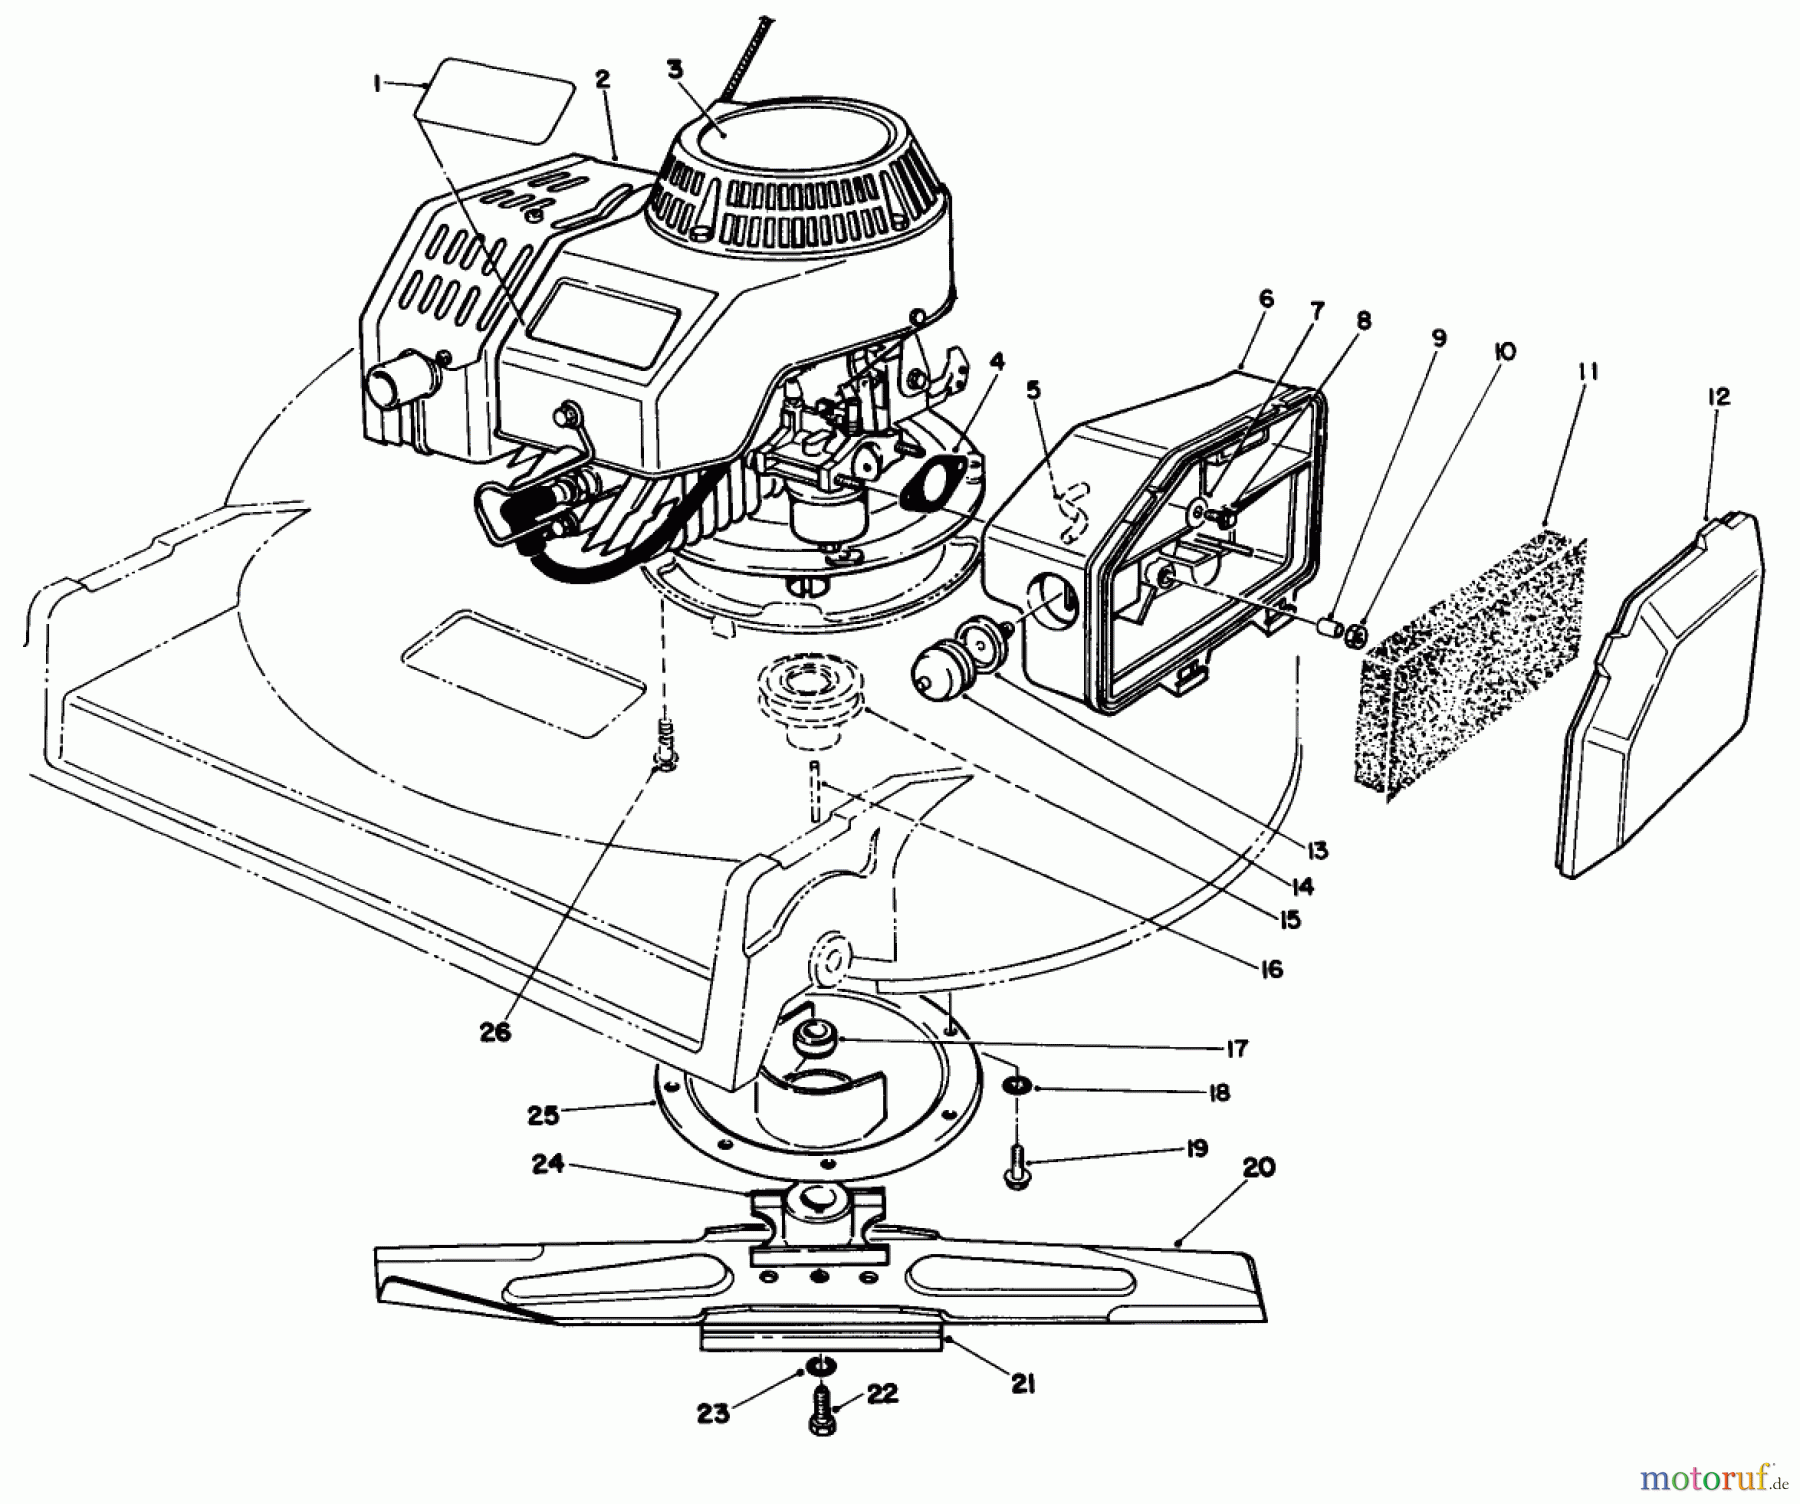  Toro Neu Mowers, Walk-Behind Seite 2 22040 - Toro Lawnmower, 1991 (1000001-1999999) ENGINE ASSEMBLY